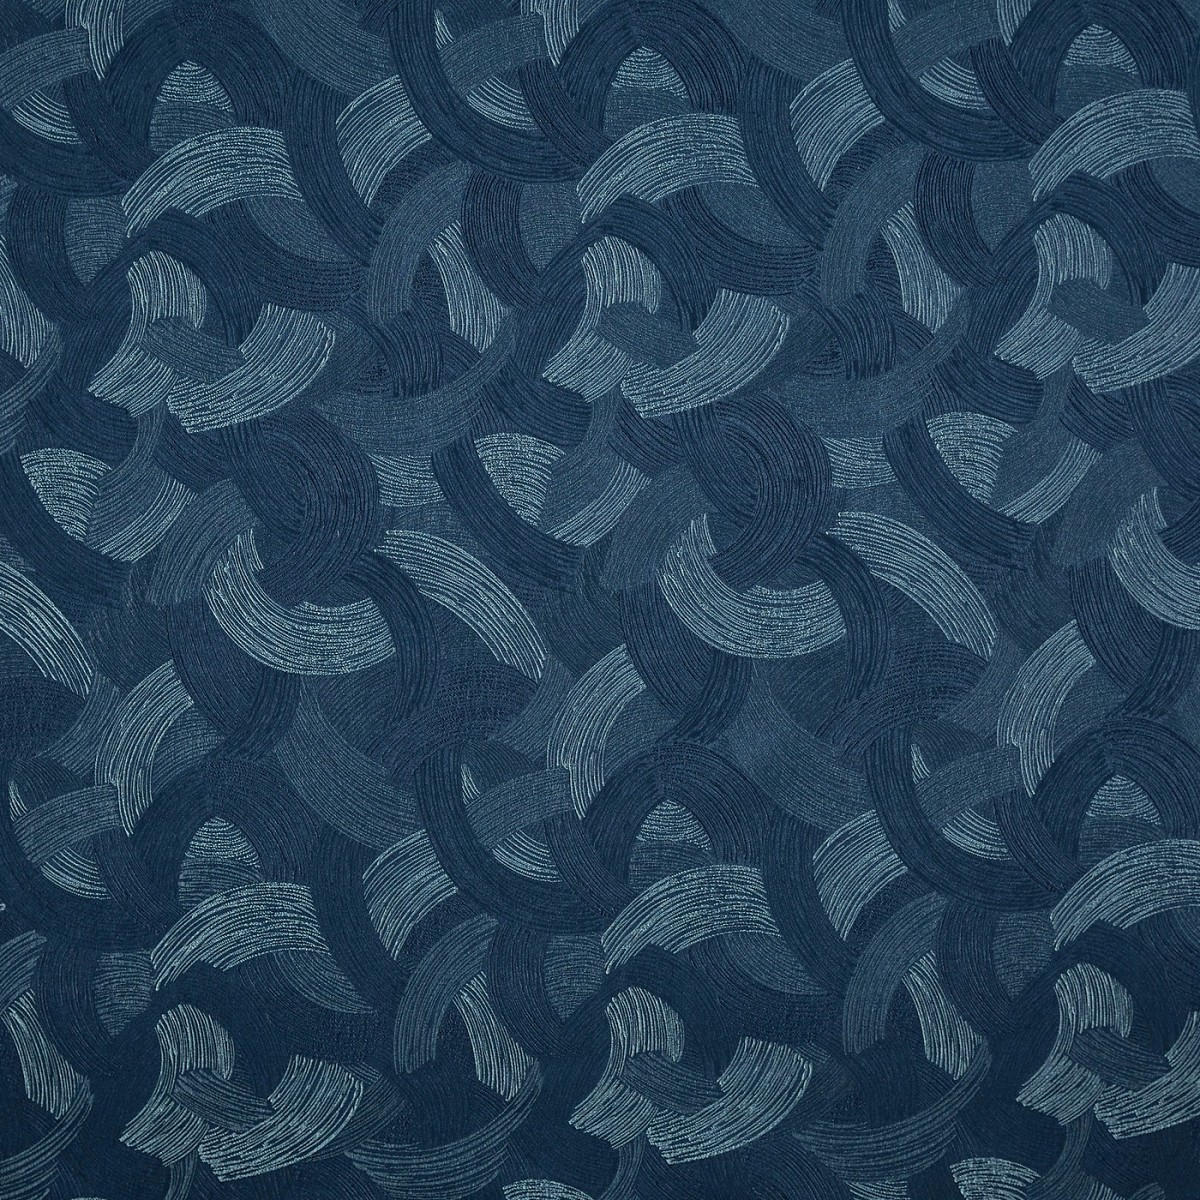 Sagittarius Midnite Fabric by Prestigious Textiles